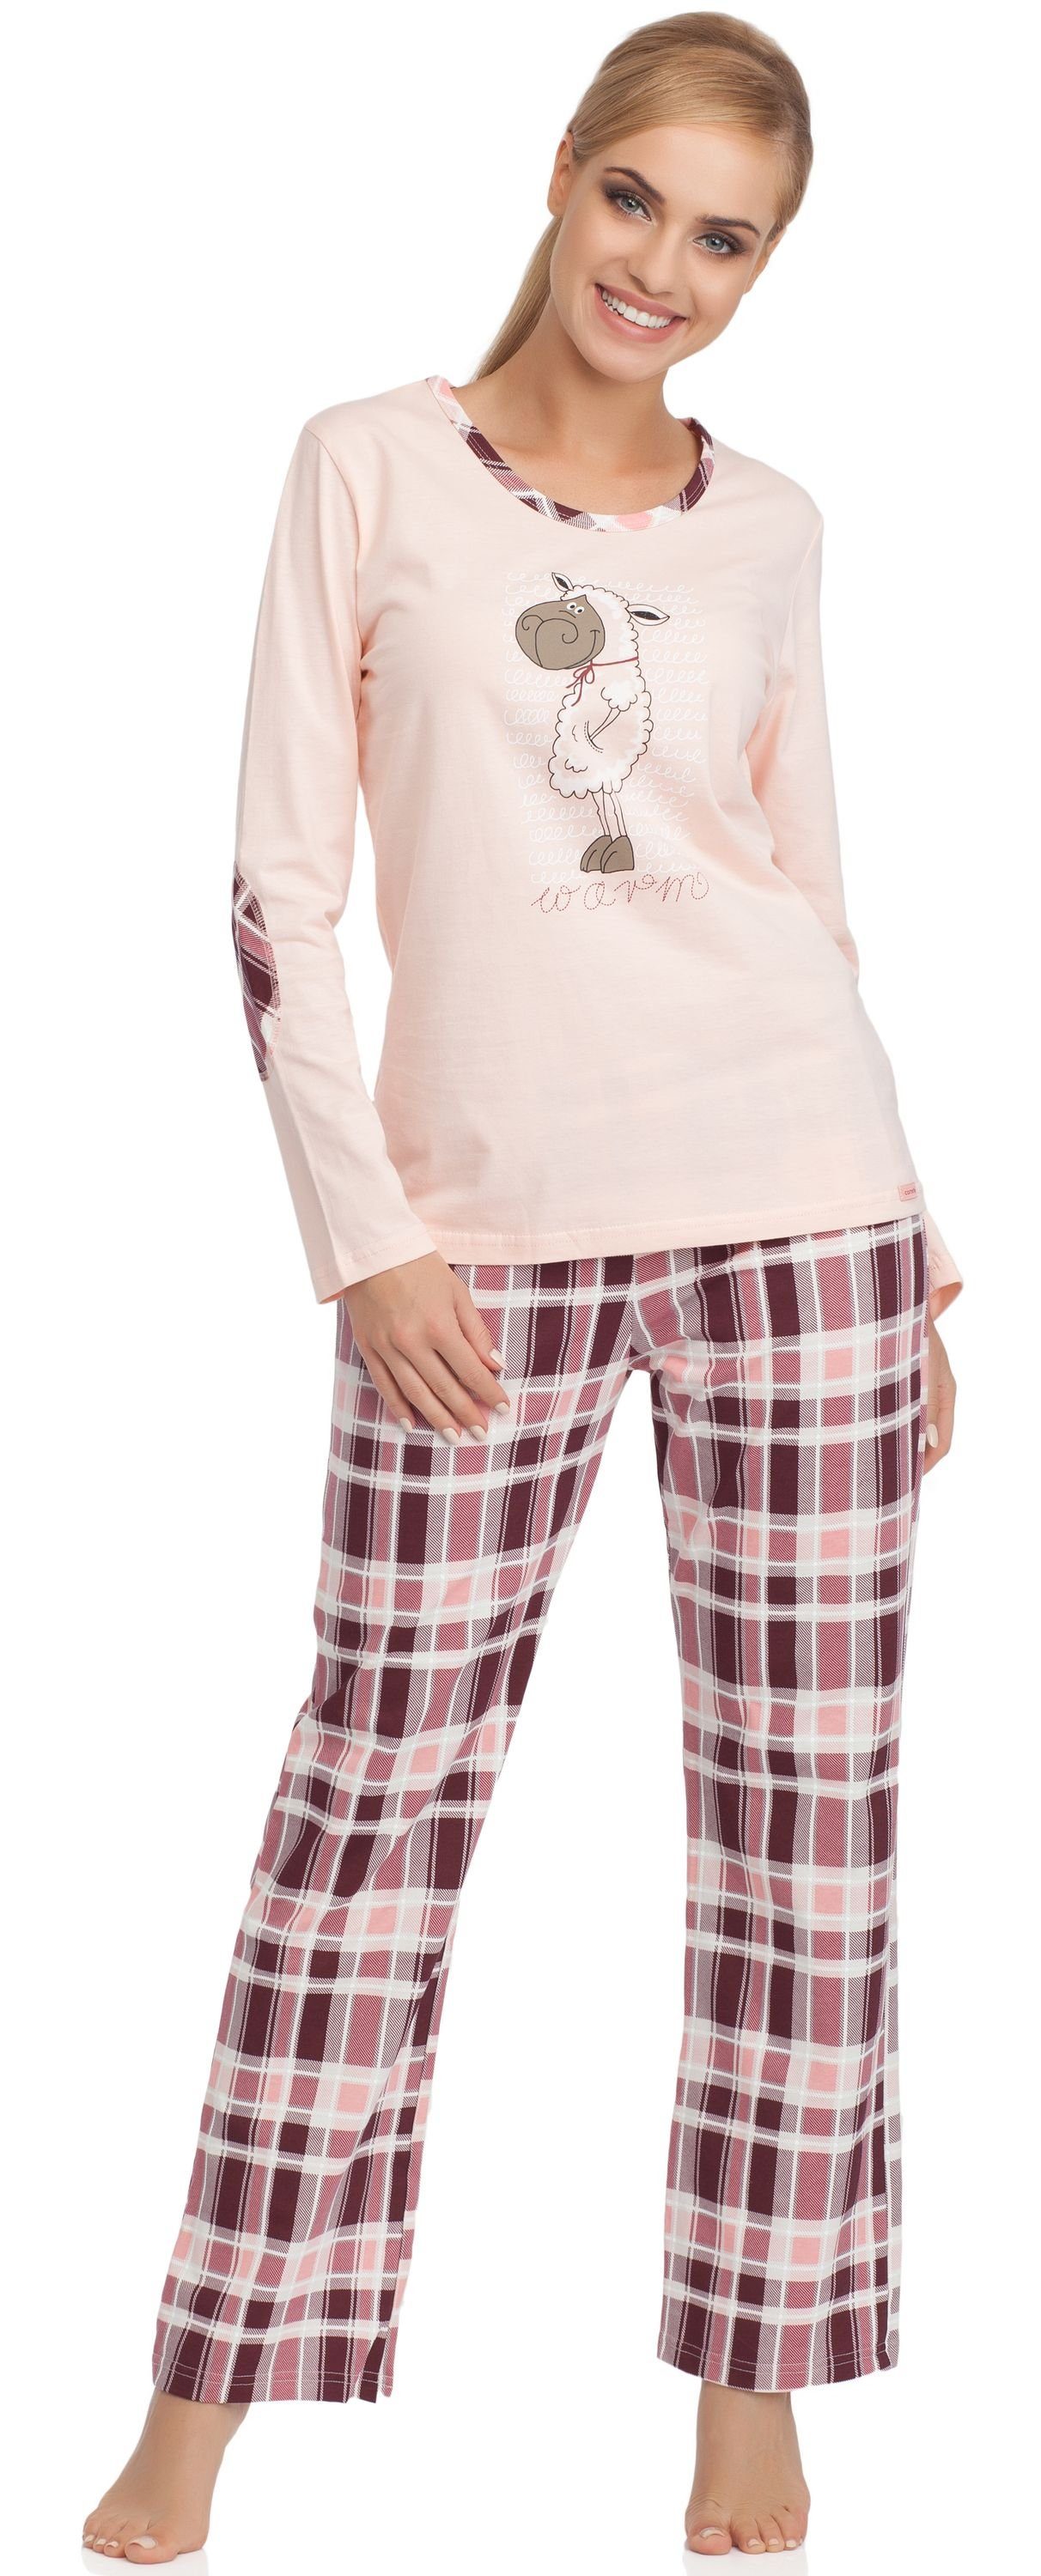 Warm Schlafanzug Damen Hellrosa/Dunkelrot Cornette Schlafanzug